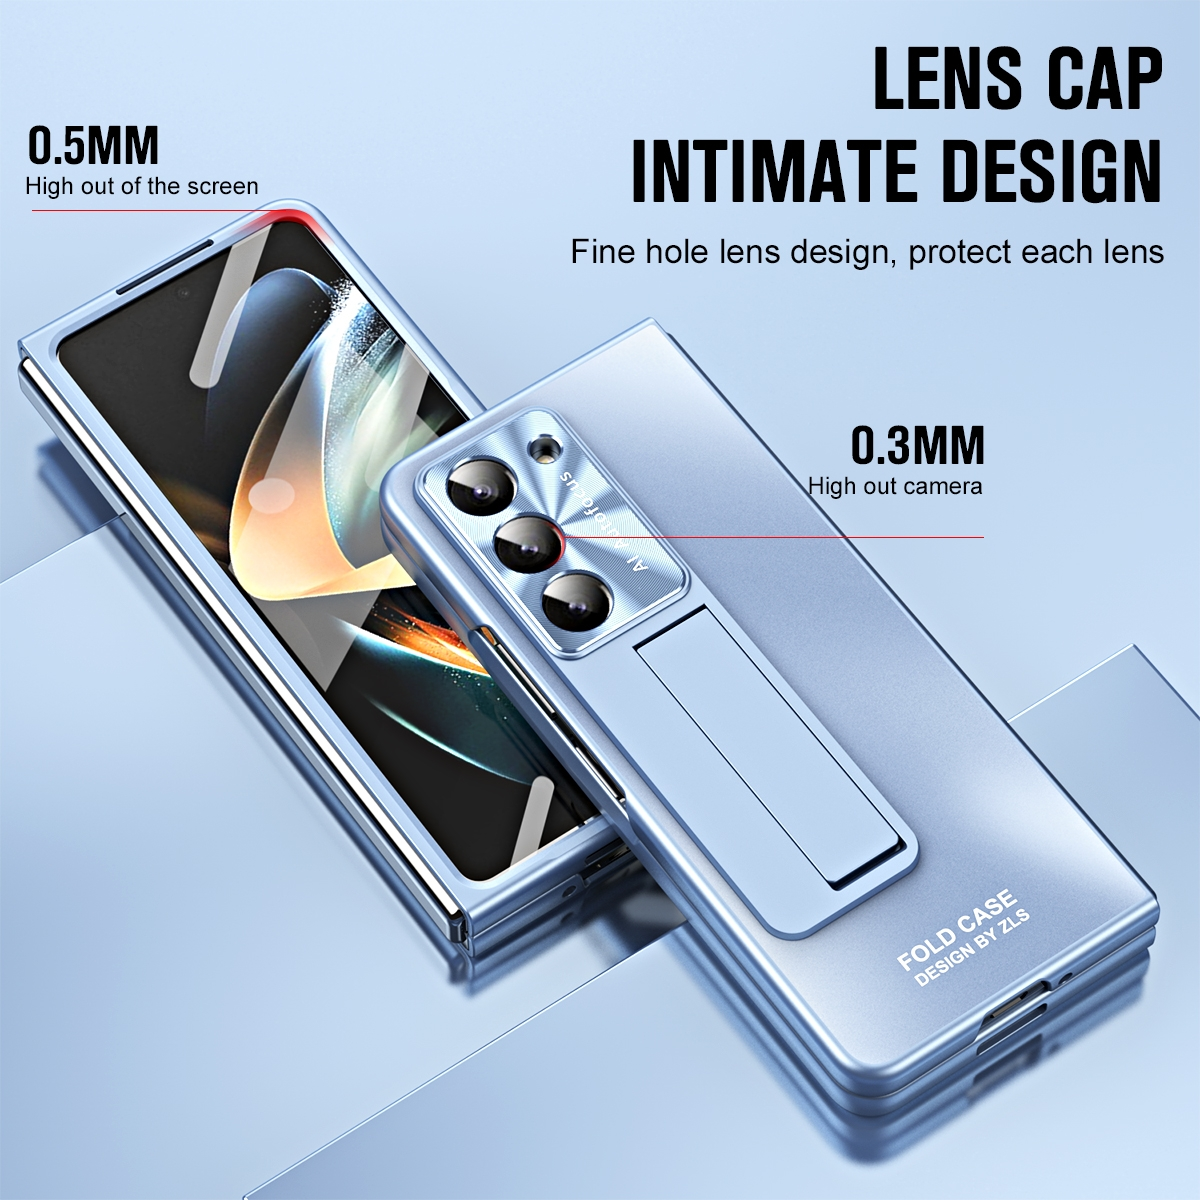 Fold5 Samsung, mit WIGENTO Hülle 5G, Blau Galaxy Z Premium Design Backcover, Standhalterung,